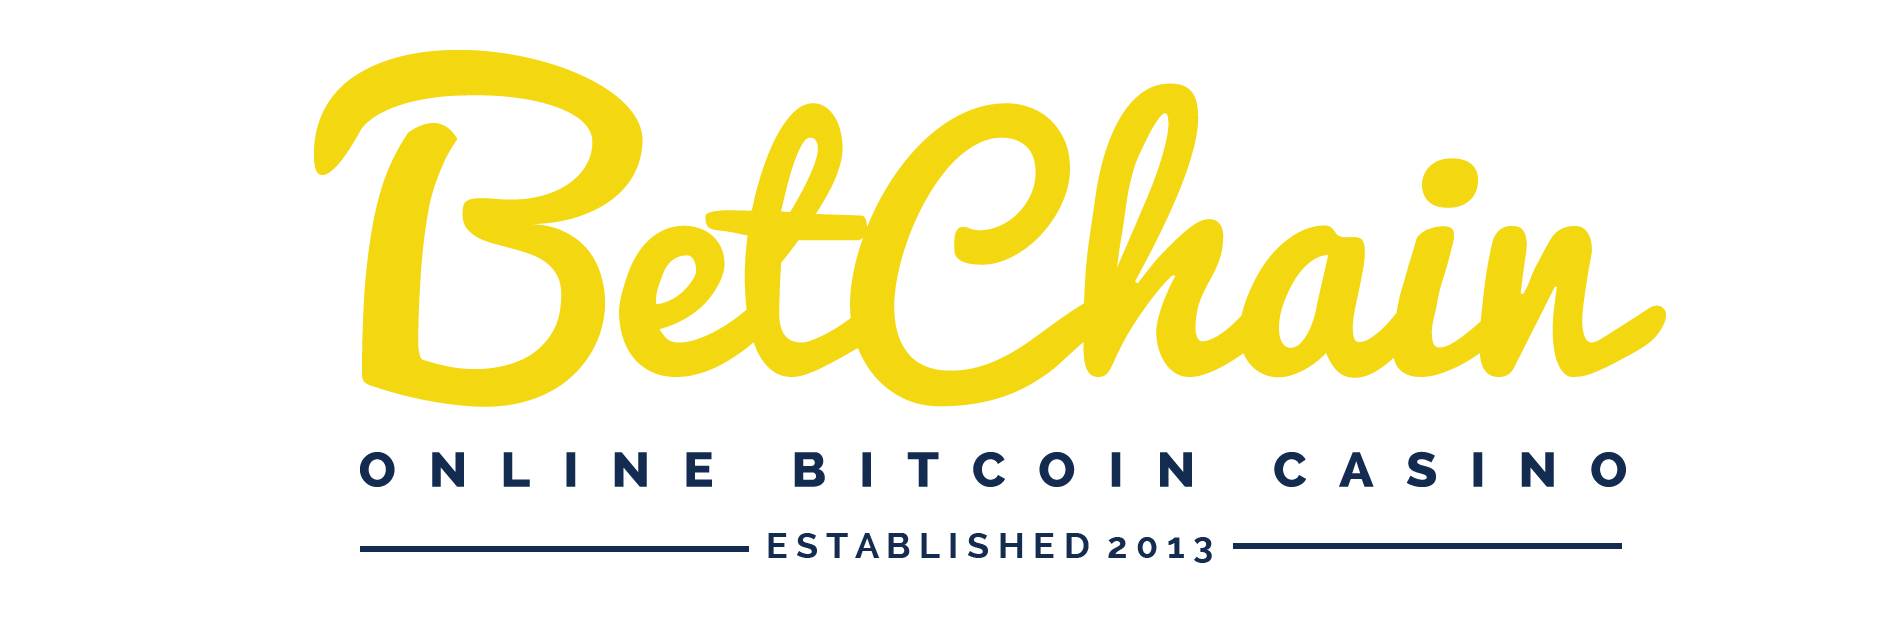 BetChain är en populär plats för de som använder Bitcoin och alternativa mynt
